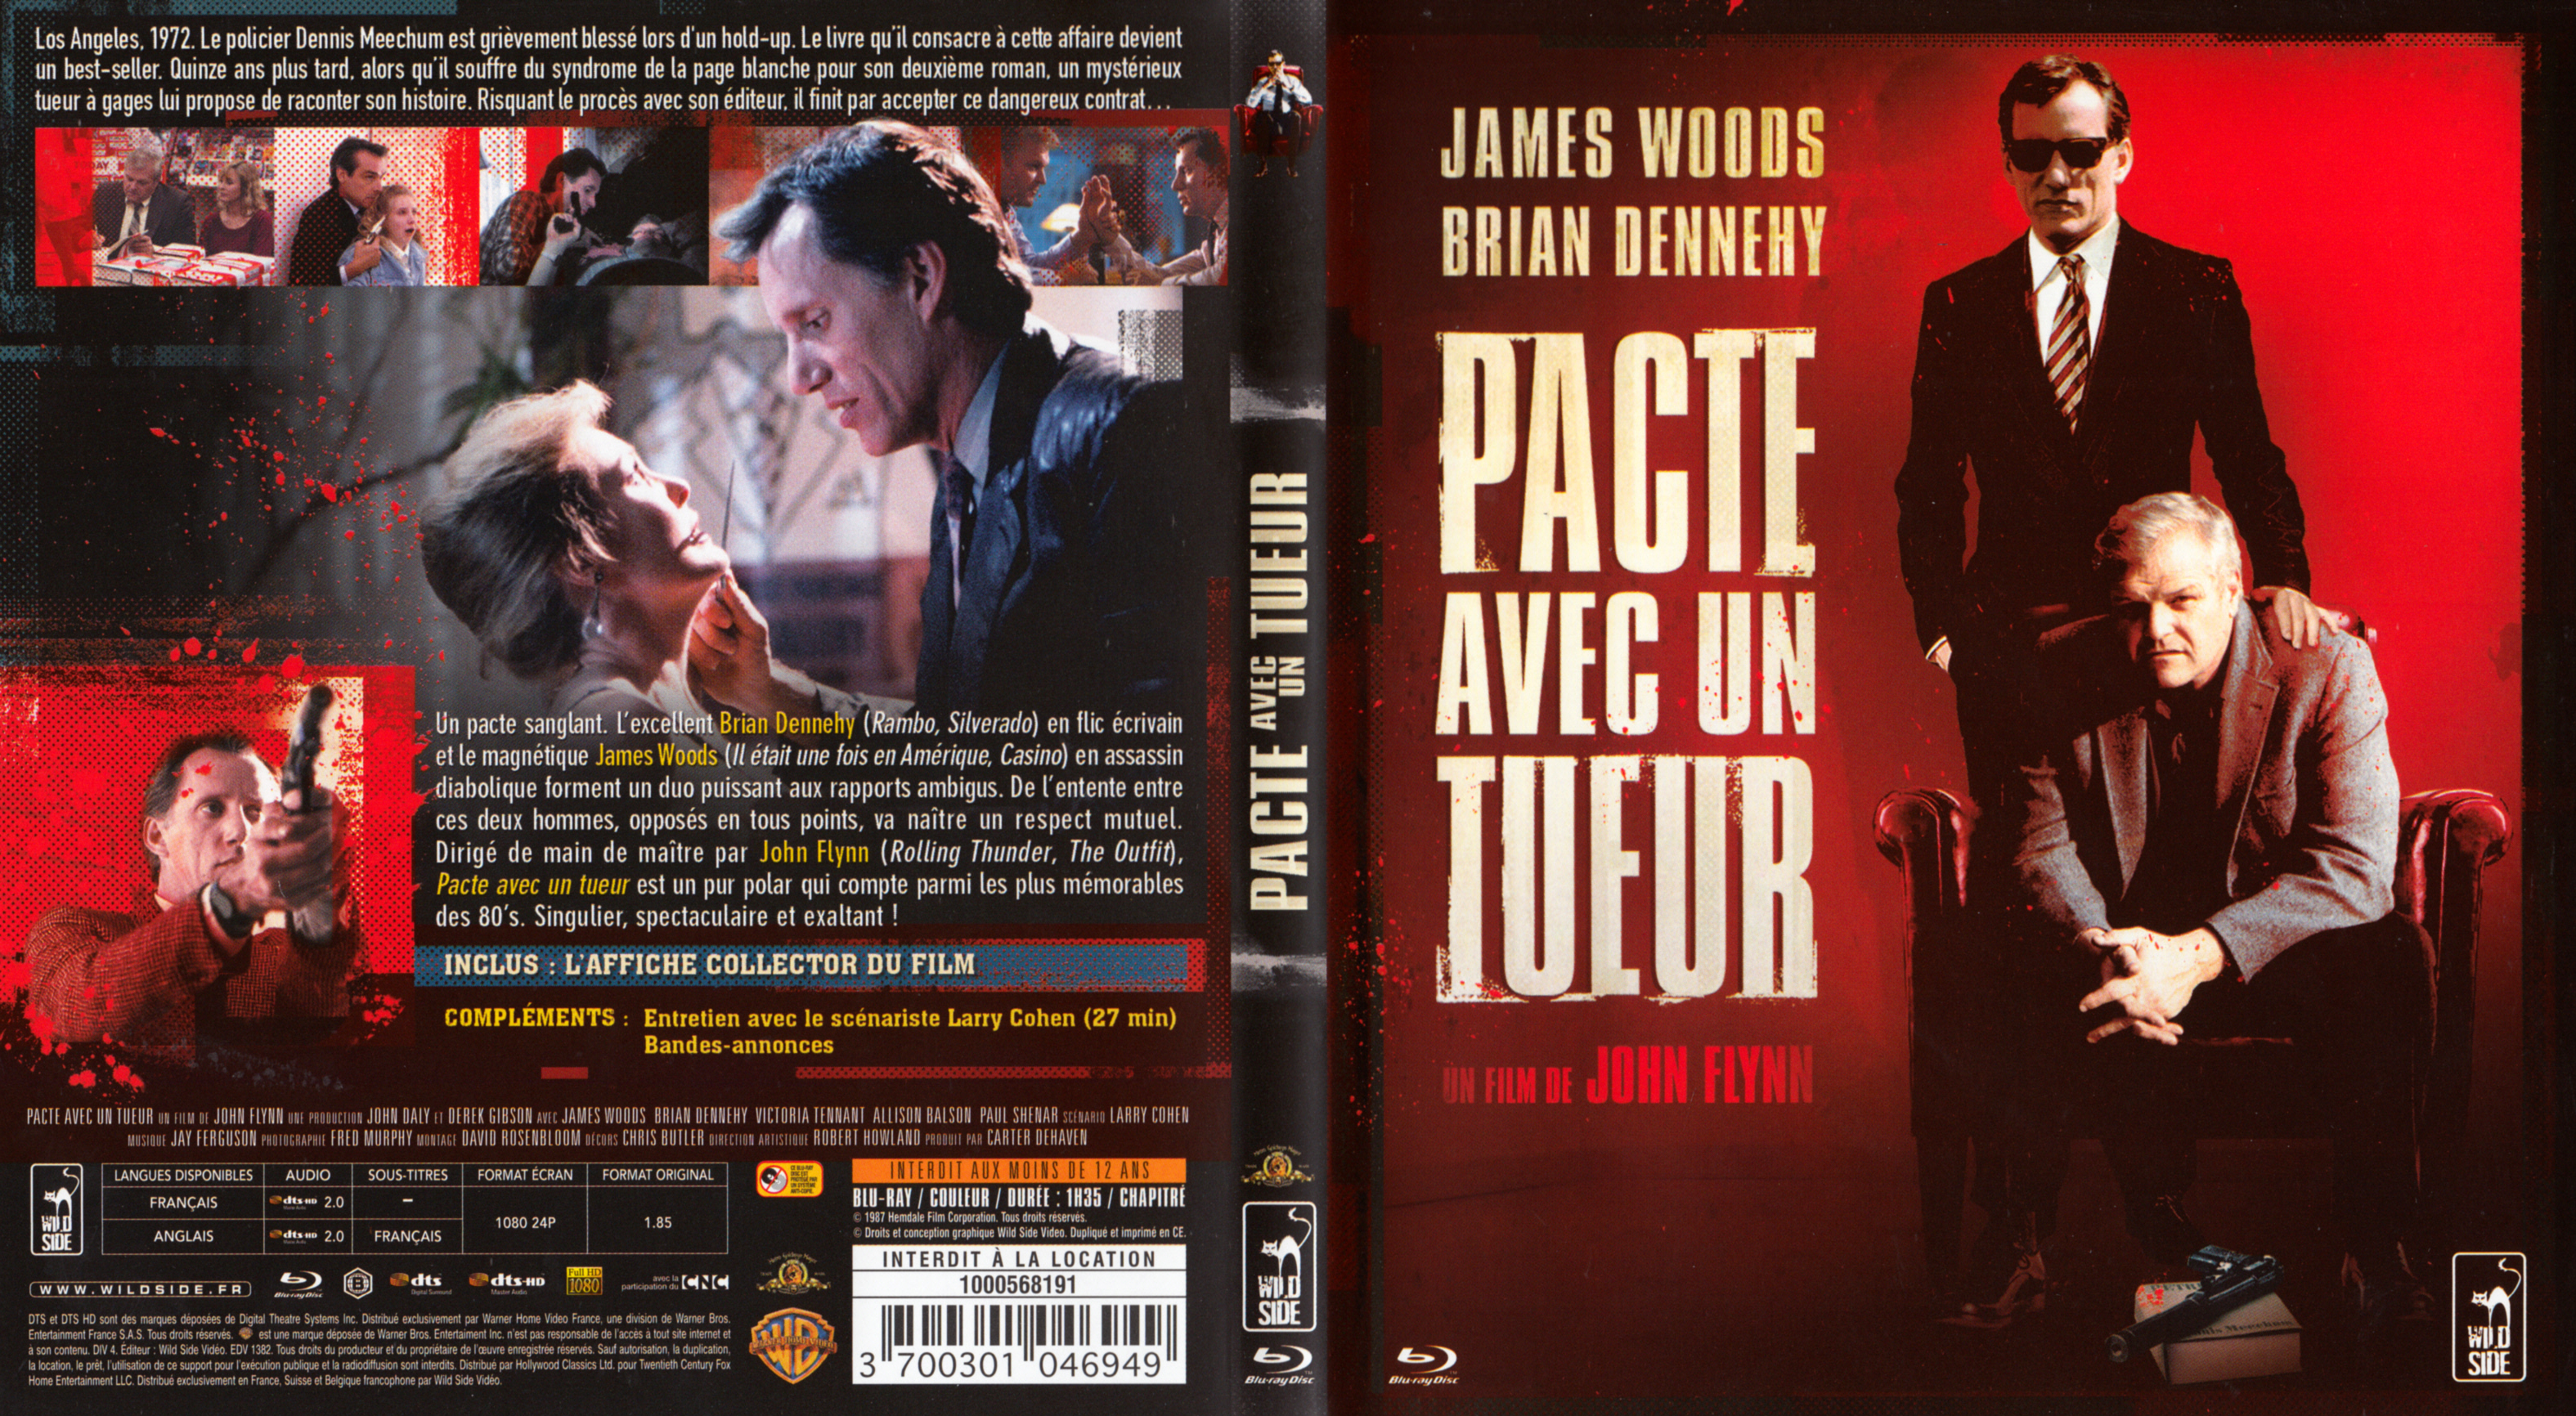 Jaquette DVD Pacte avec un tueur (BLU-RAY)